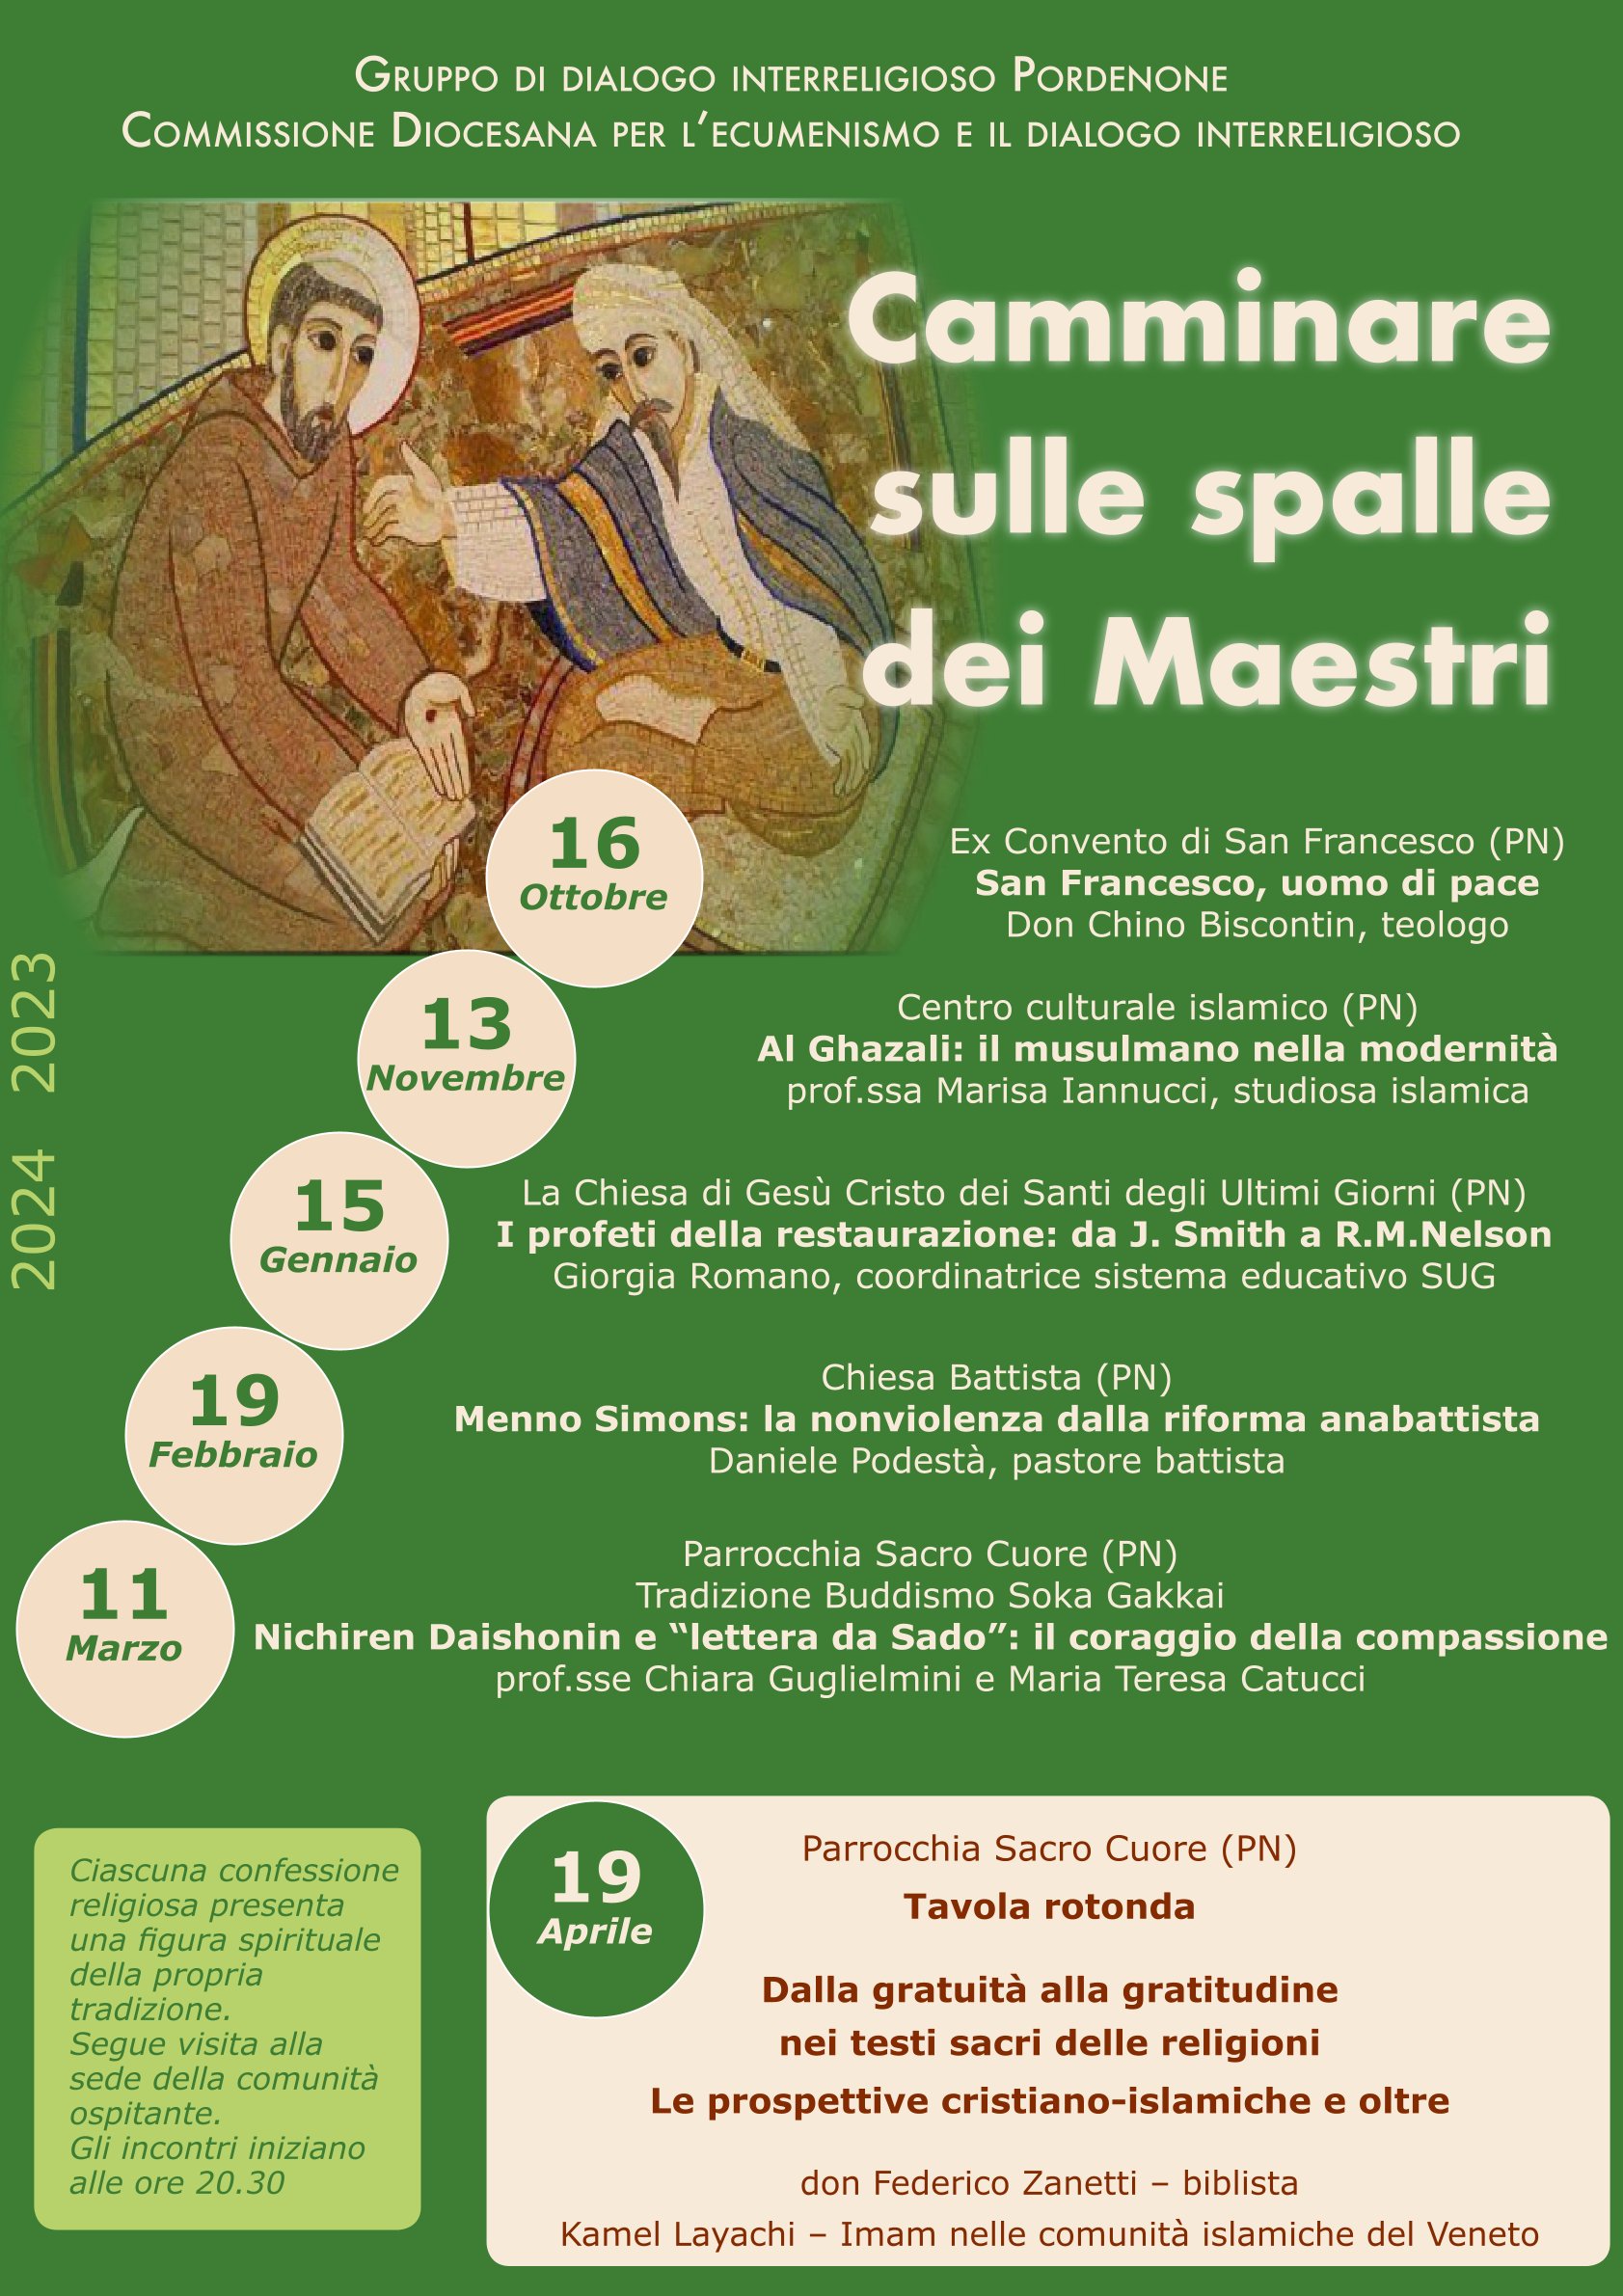 Dialogo interreligioso: Pordenone, lunedì un incontro per il ciclo  “Camminare sulle spalle dei Maestri” - AgenSIR